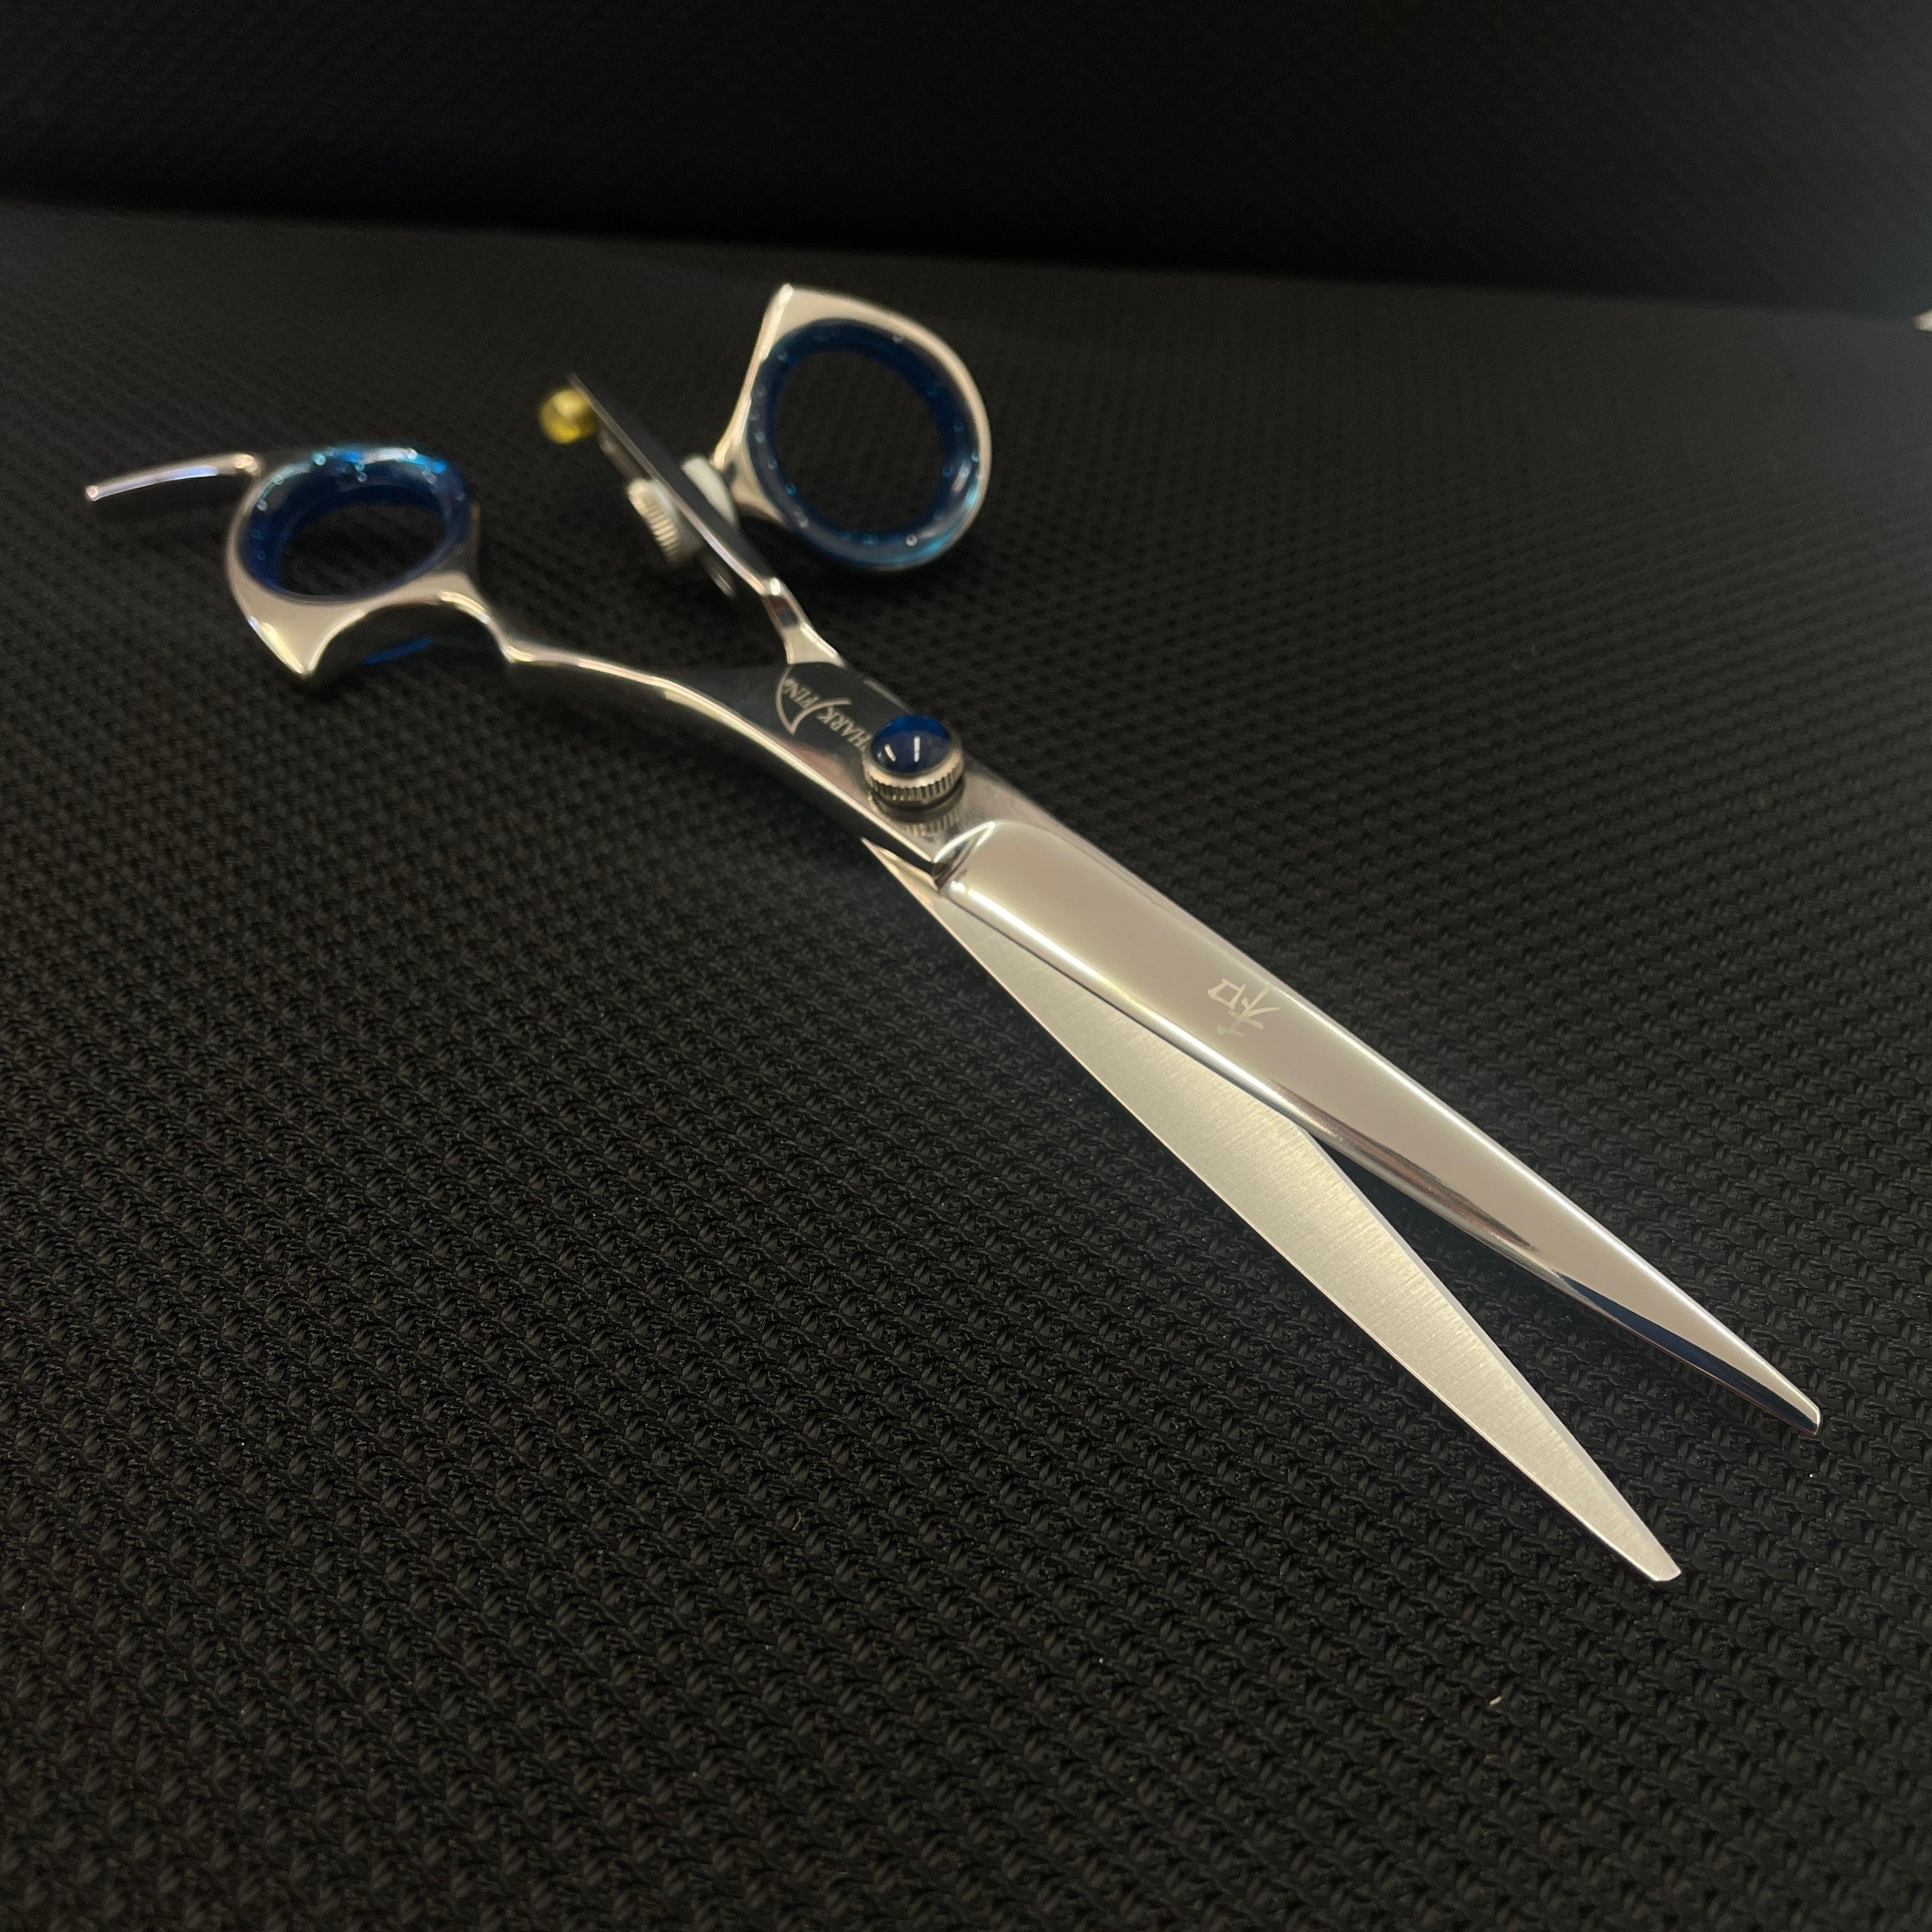 Professional Scissors Sharpener